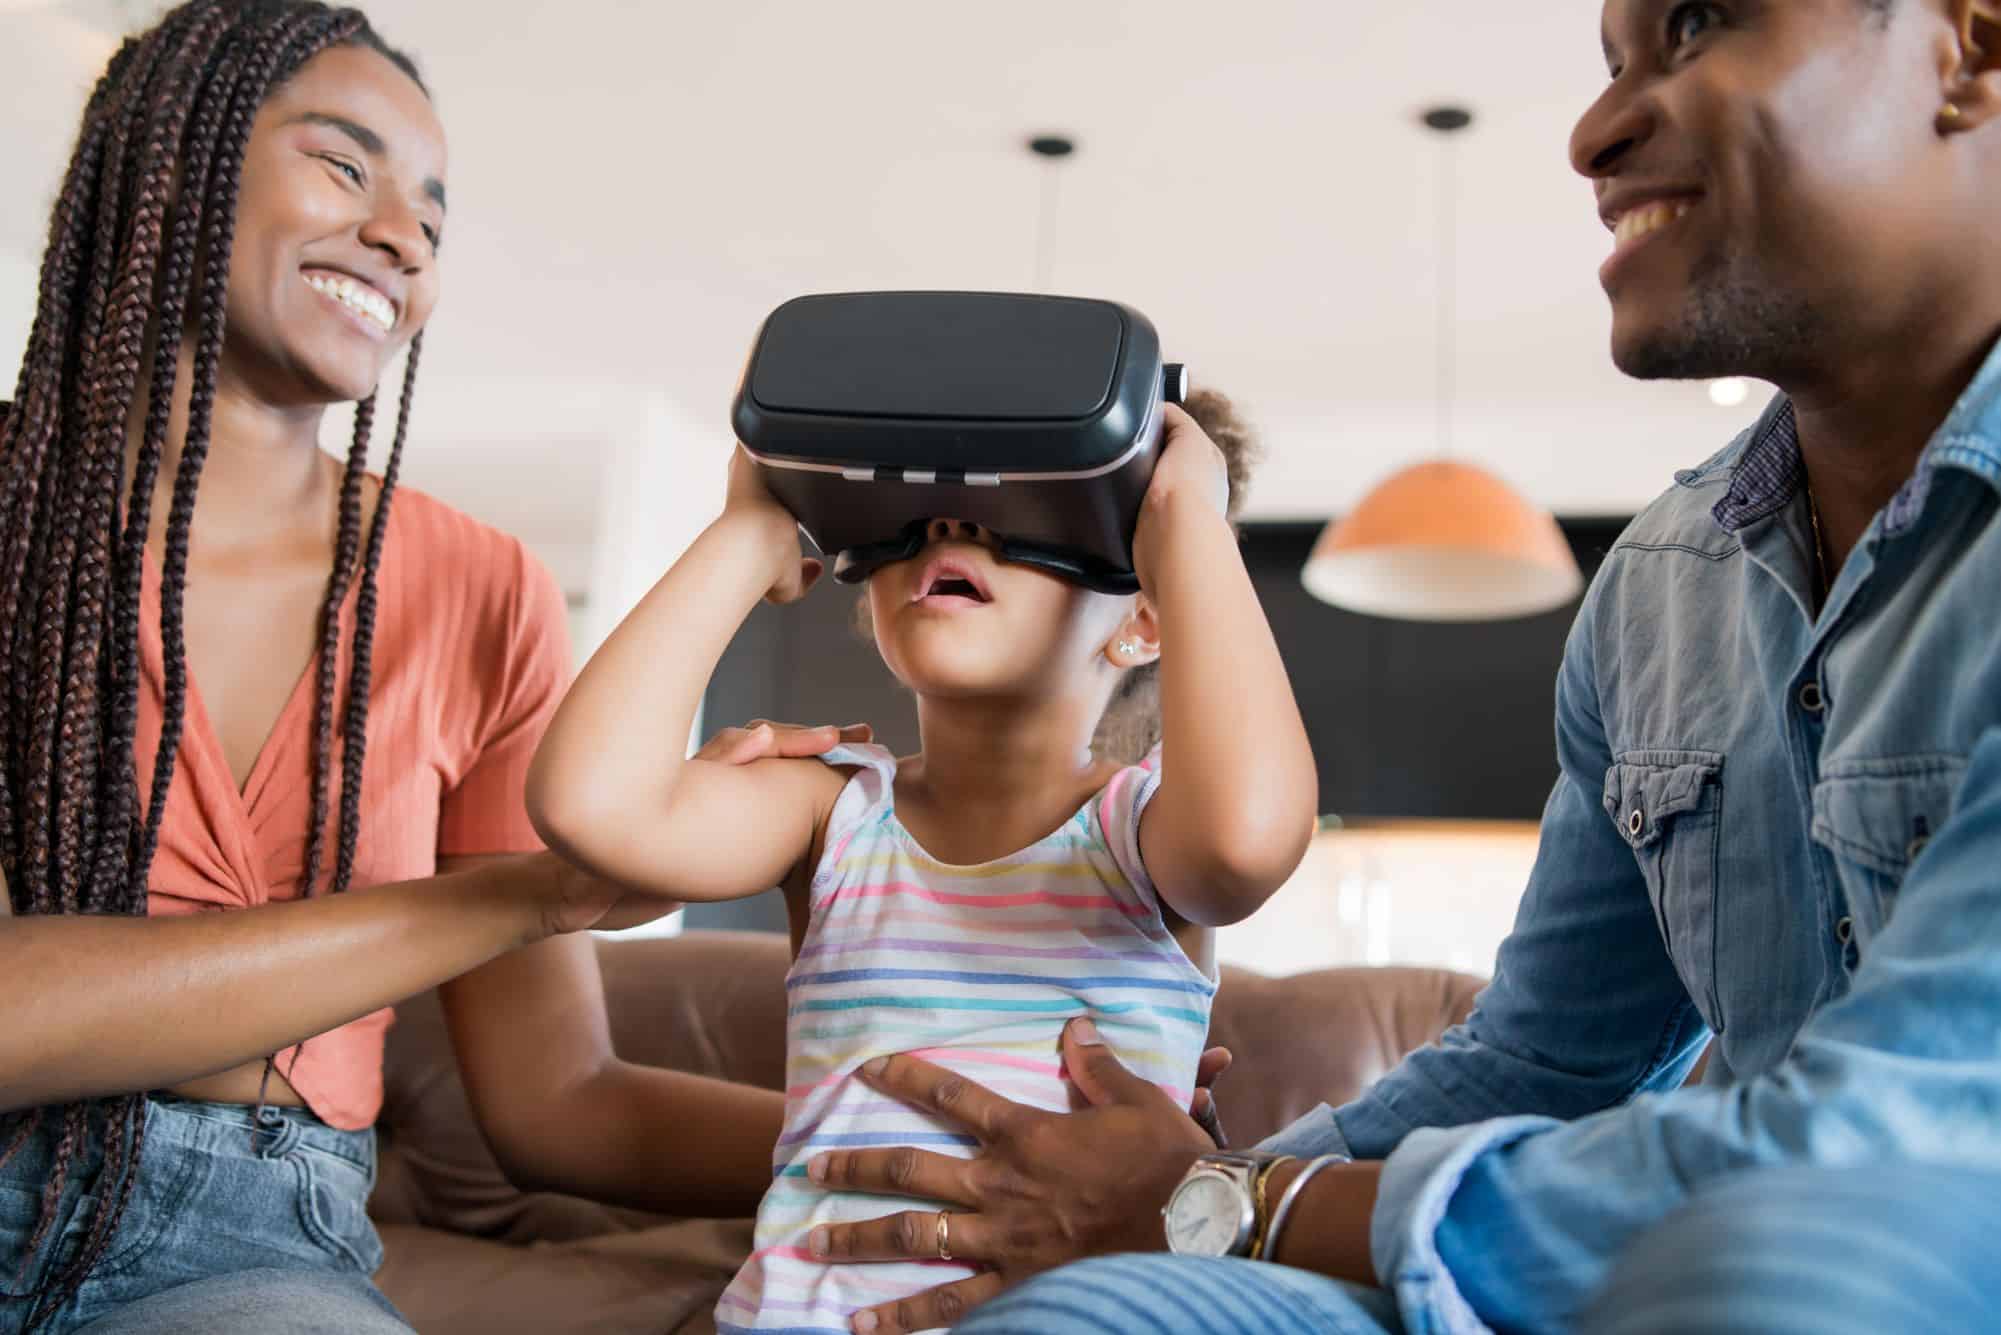 realidade virtual chegará para crianças (mas com ressalvas)